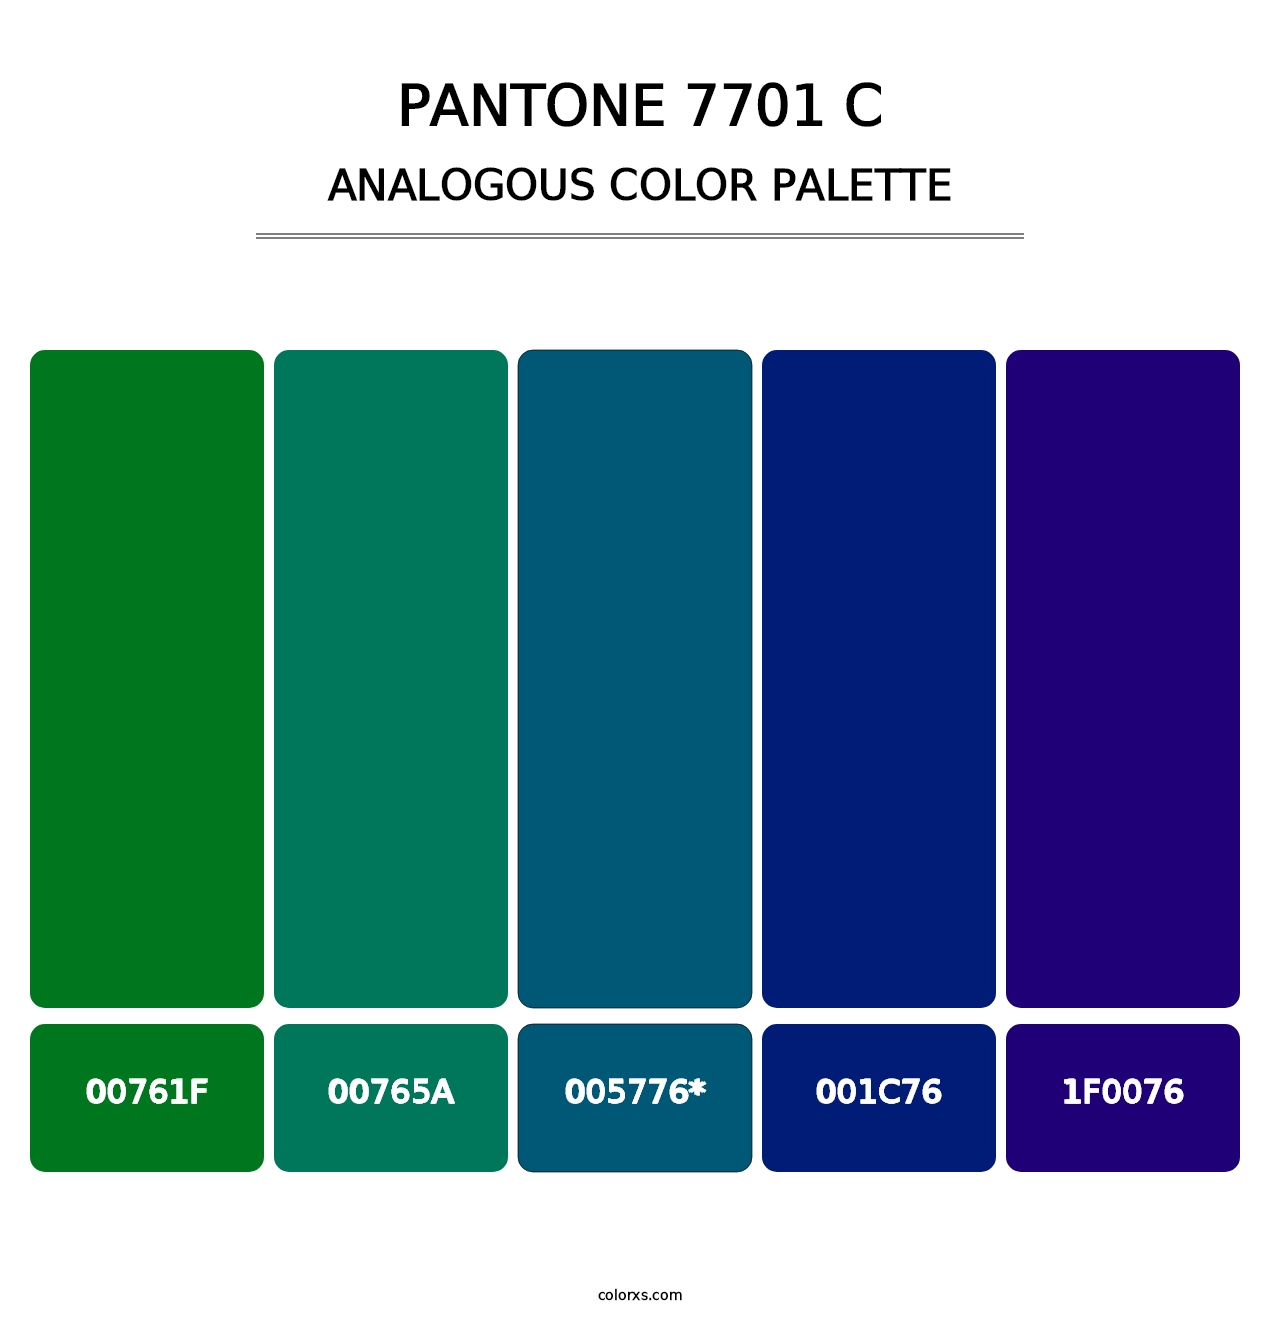 PANTONE 7701 C - Analogous Color Palette